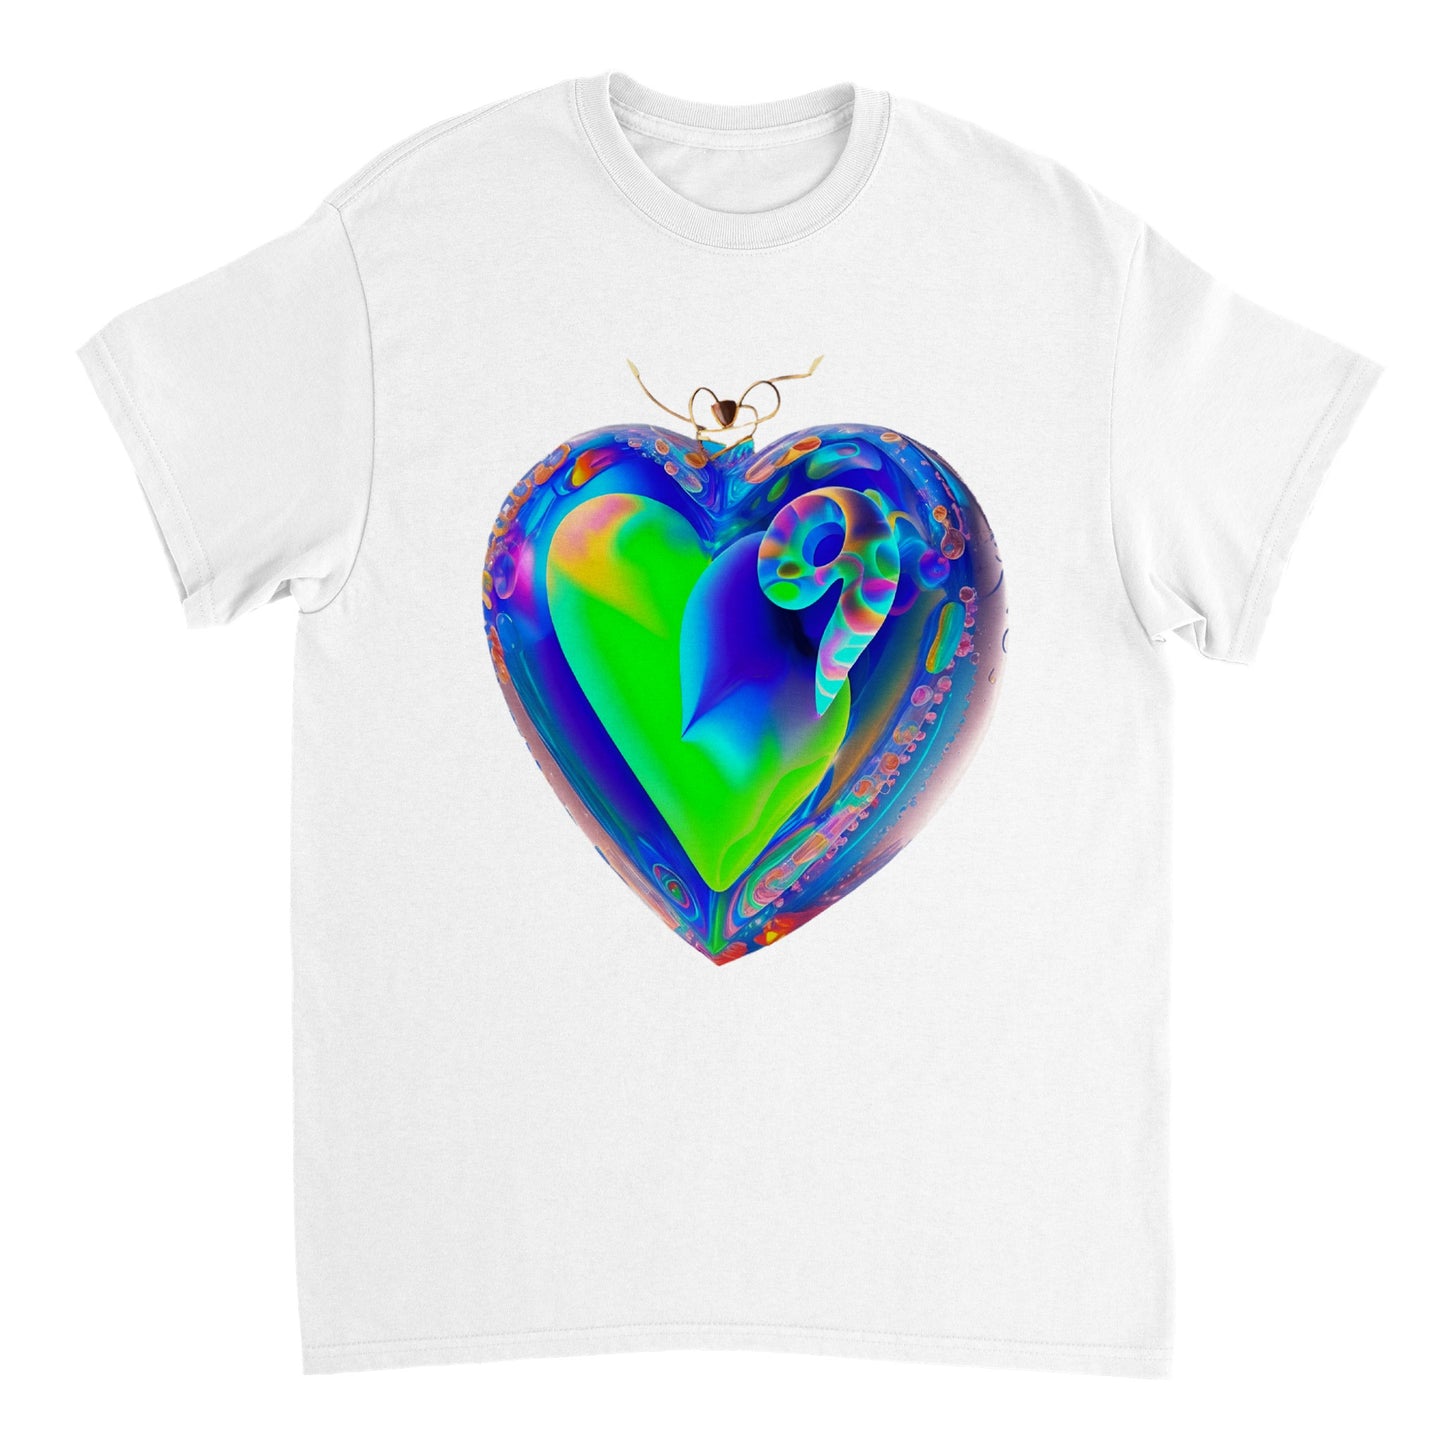 Love Heart - Heavyweight Unisex Crewneck T-shirt 111